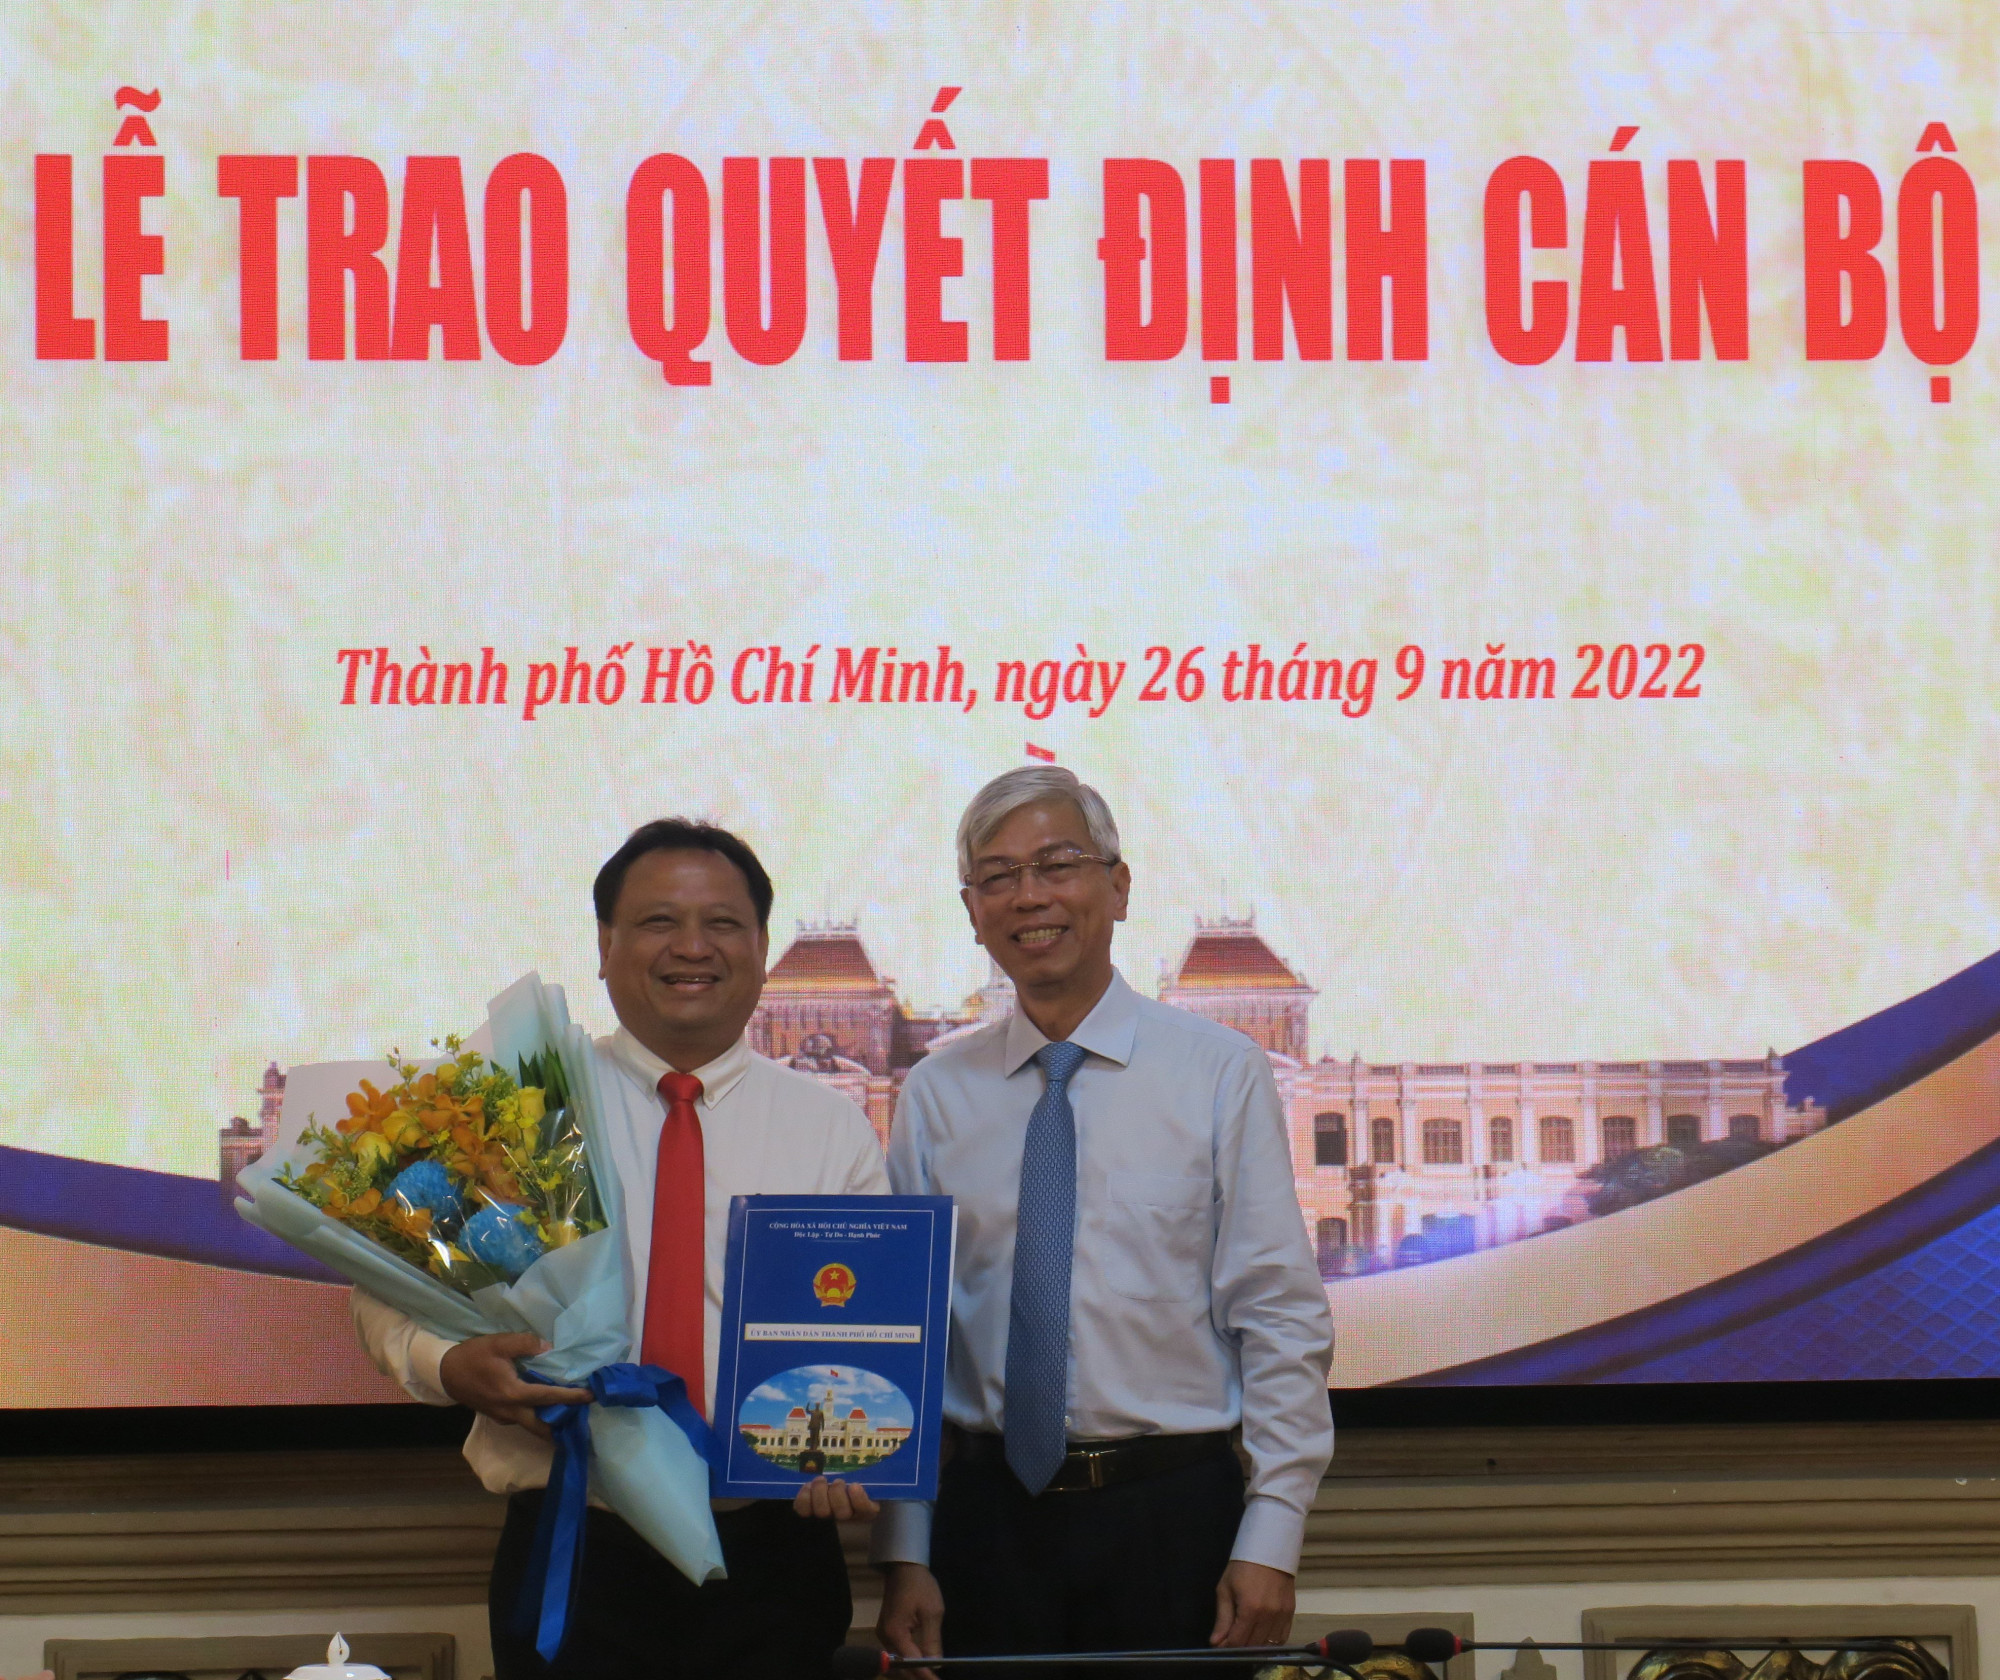 Phó chủ tịch UBND TPHCM Võ Văn Hoan trao quyết định, chúc mừng và hy vọng ông Trần Phi Long